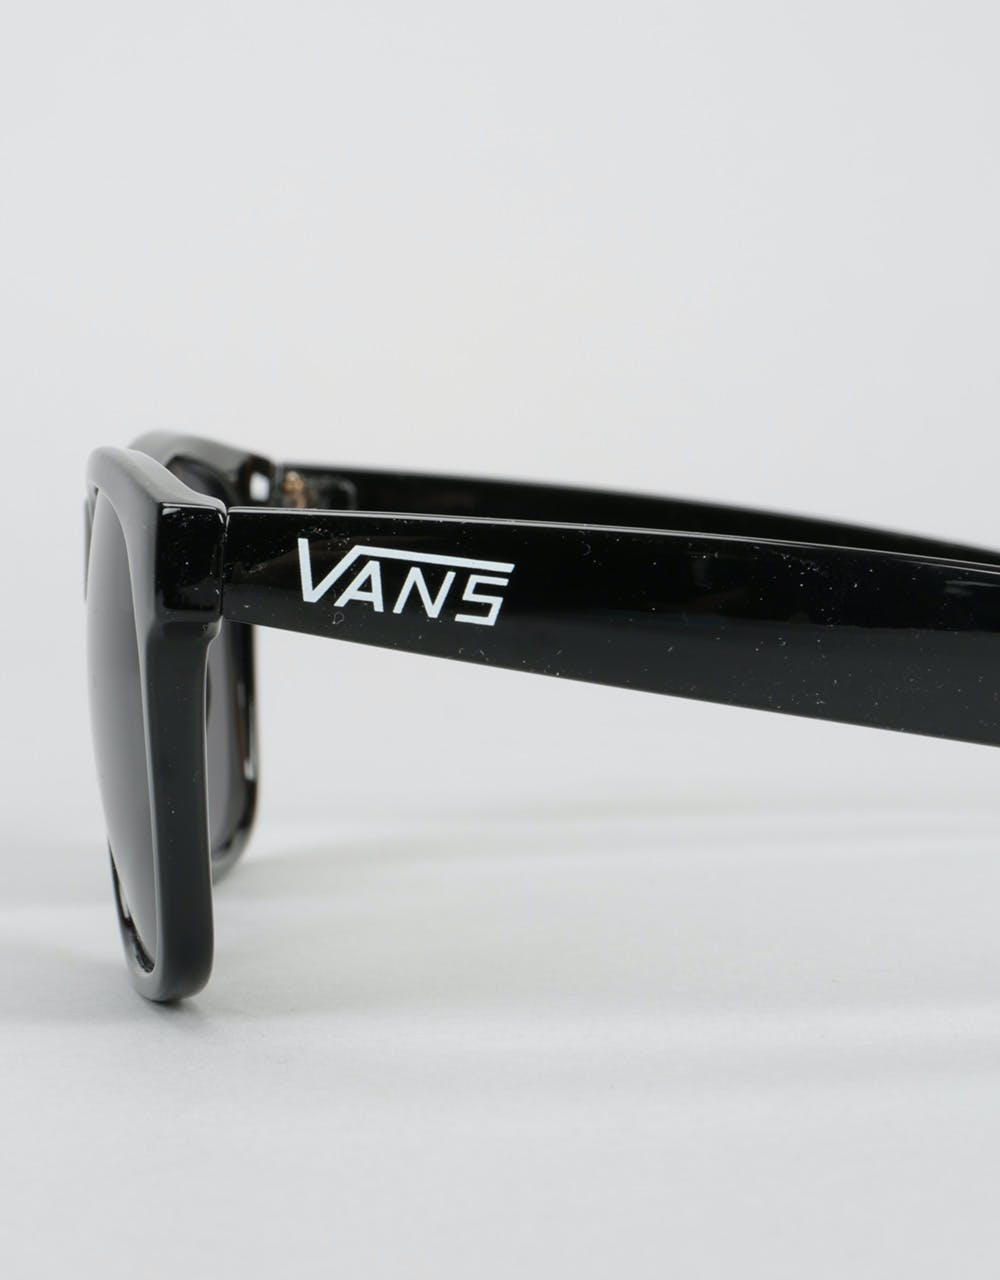 Vans Spicoli 4 Sunglasses - Black